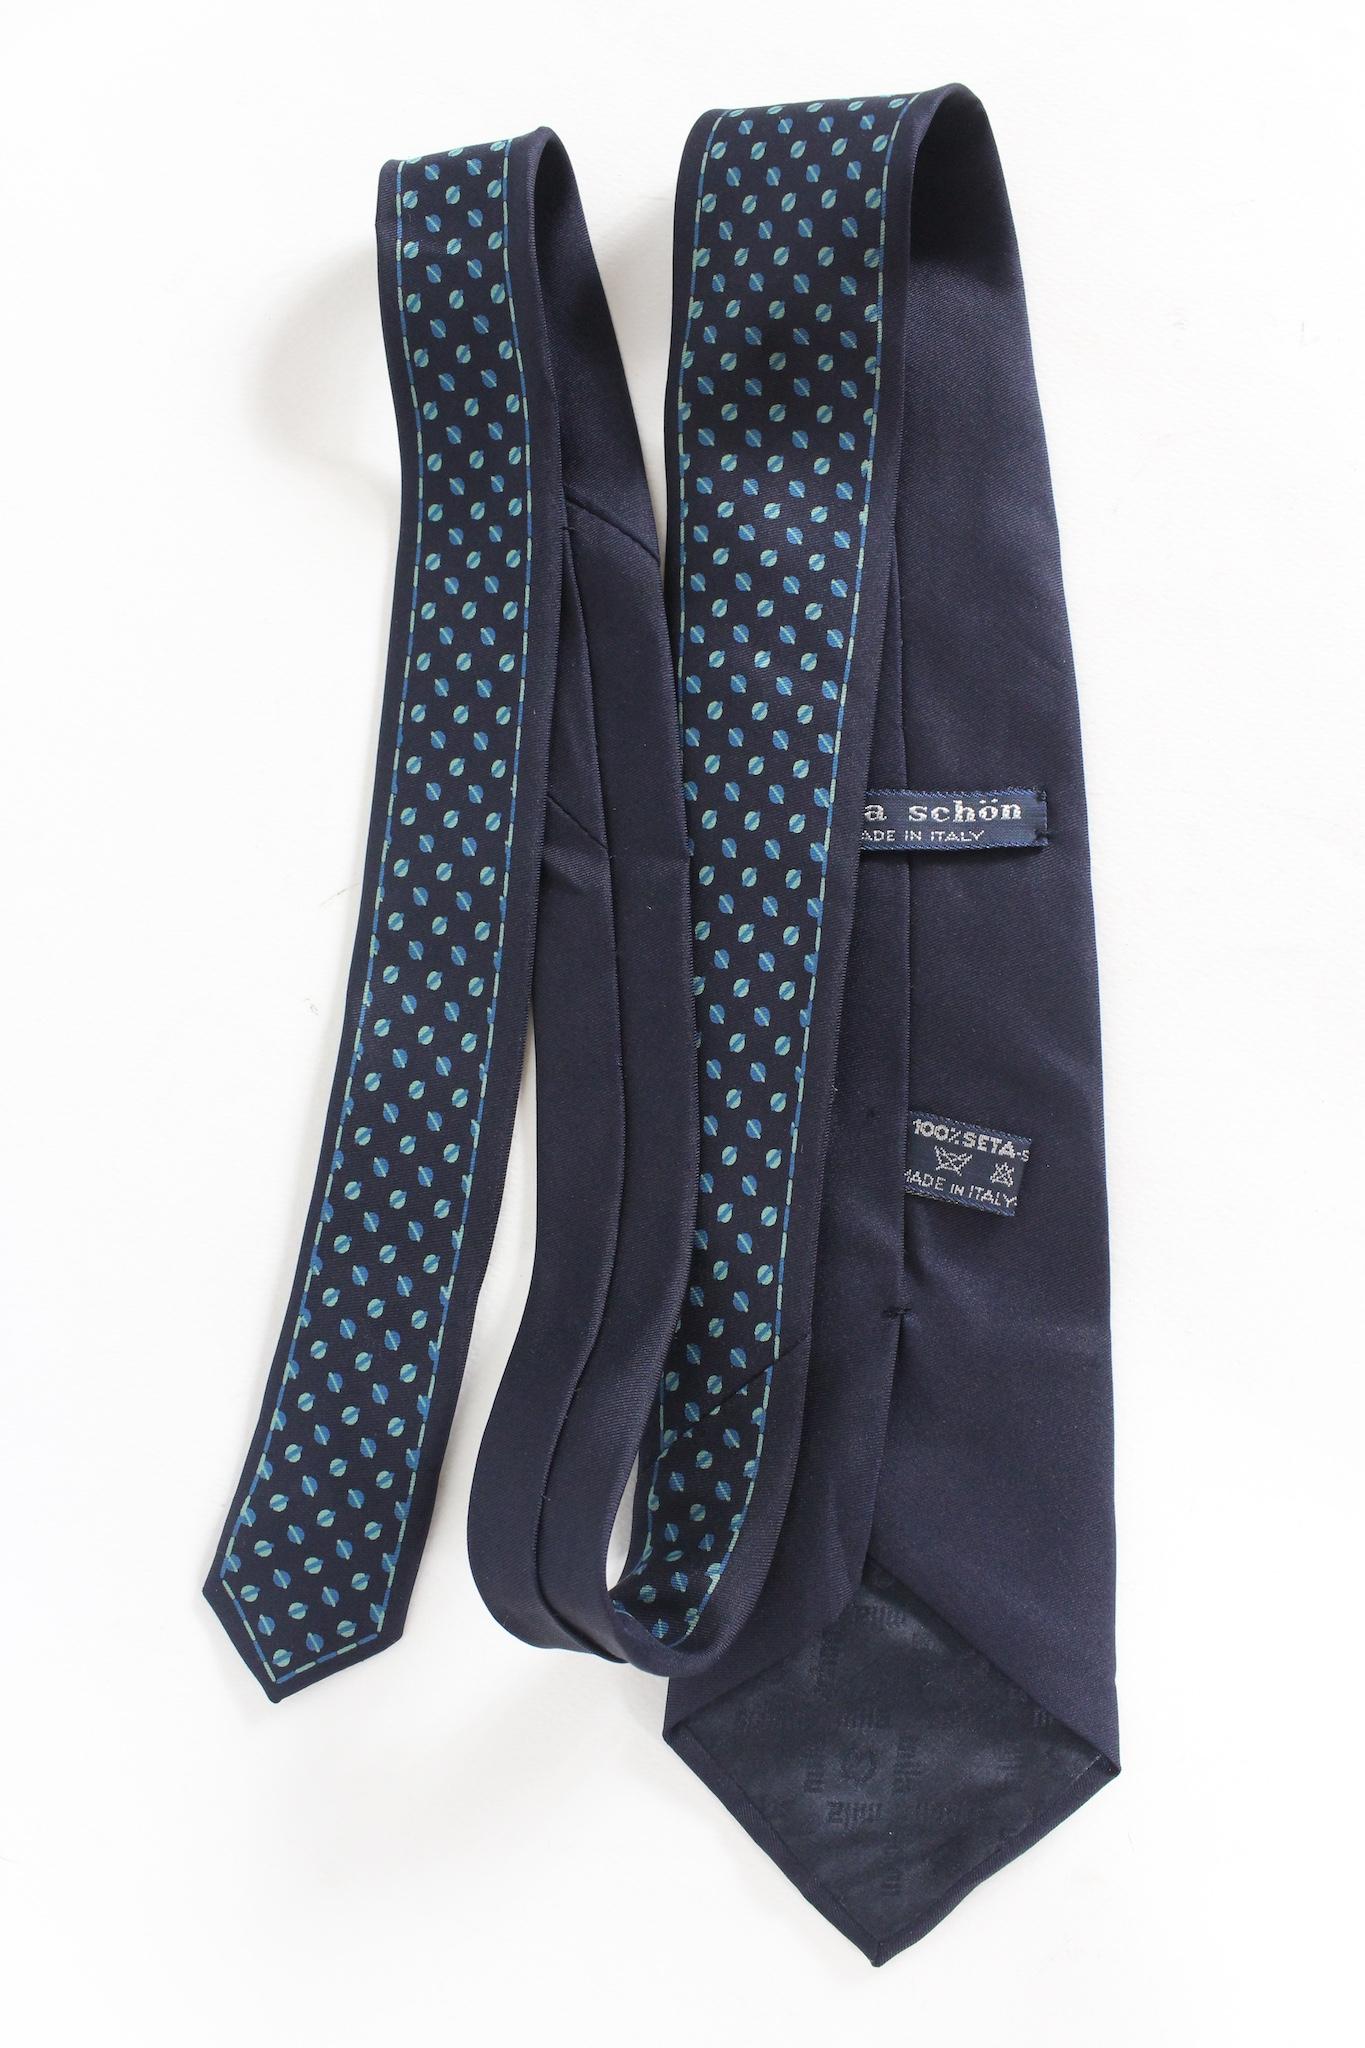 Mila Schon Vintage-Krawatte aus den 90ern. Blaue Farbe mit hellblauen geometrischen Mustern. stoff aus 100% Seide. Hergestellt in Italien.

Länge: 138 cm
Breite: 8.5 cm